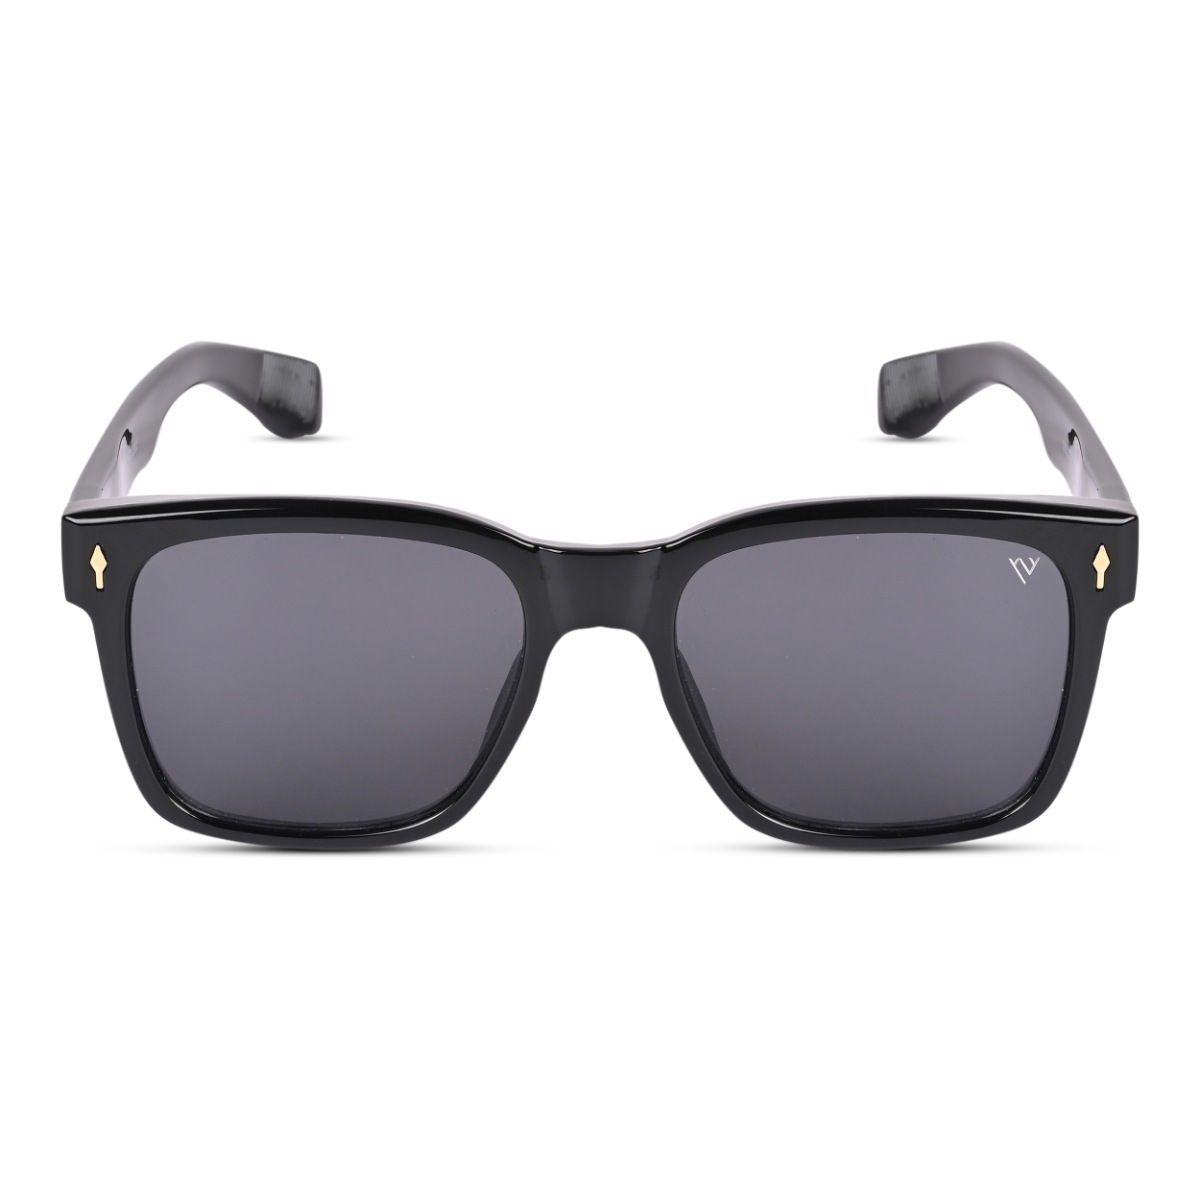 Buy Voyage Matt Black Polarized Wayfarer Sunglasses for Men & Women -  TR8023PMG4440 Online